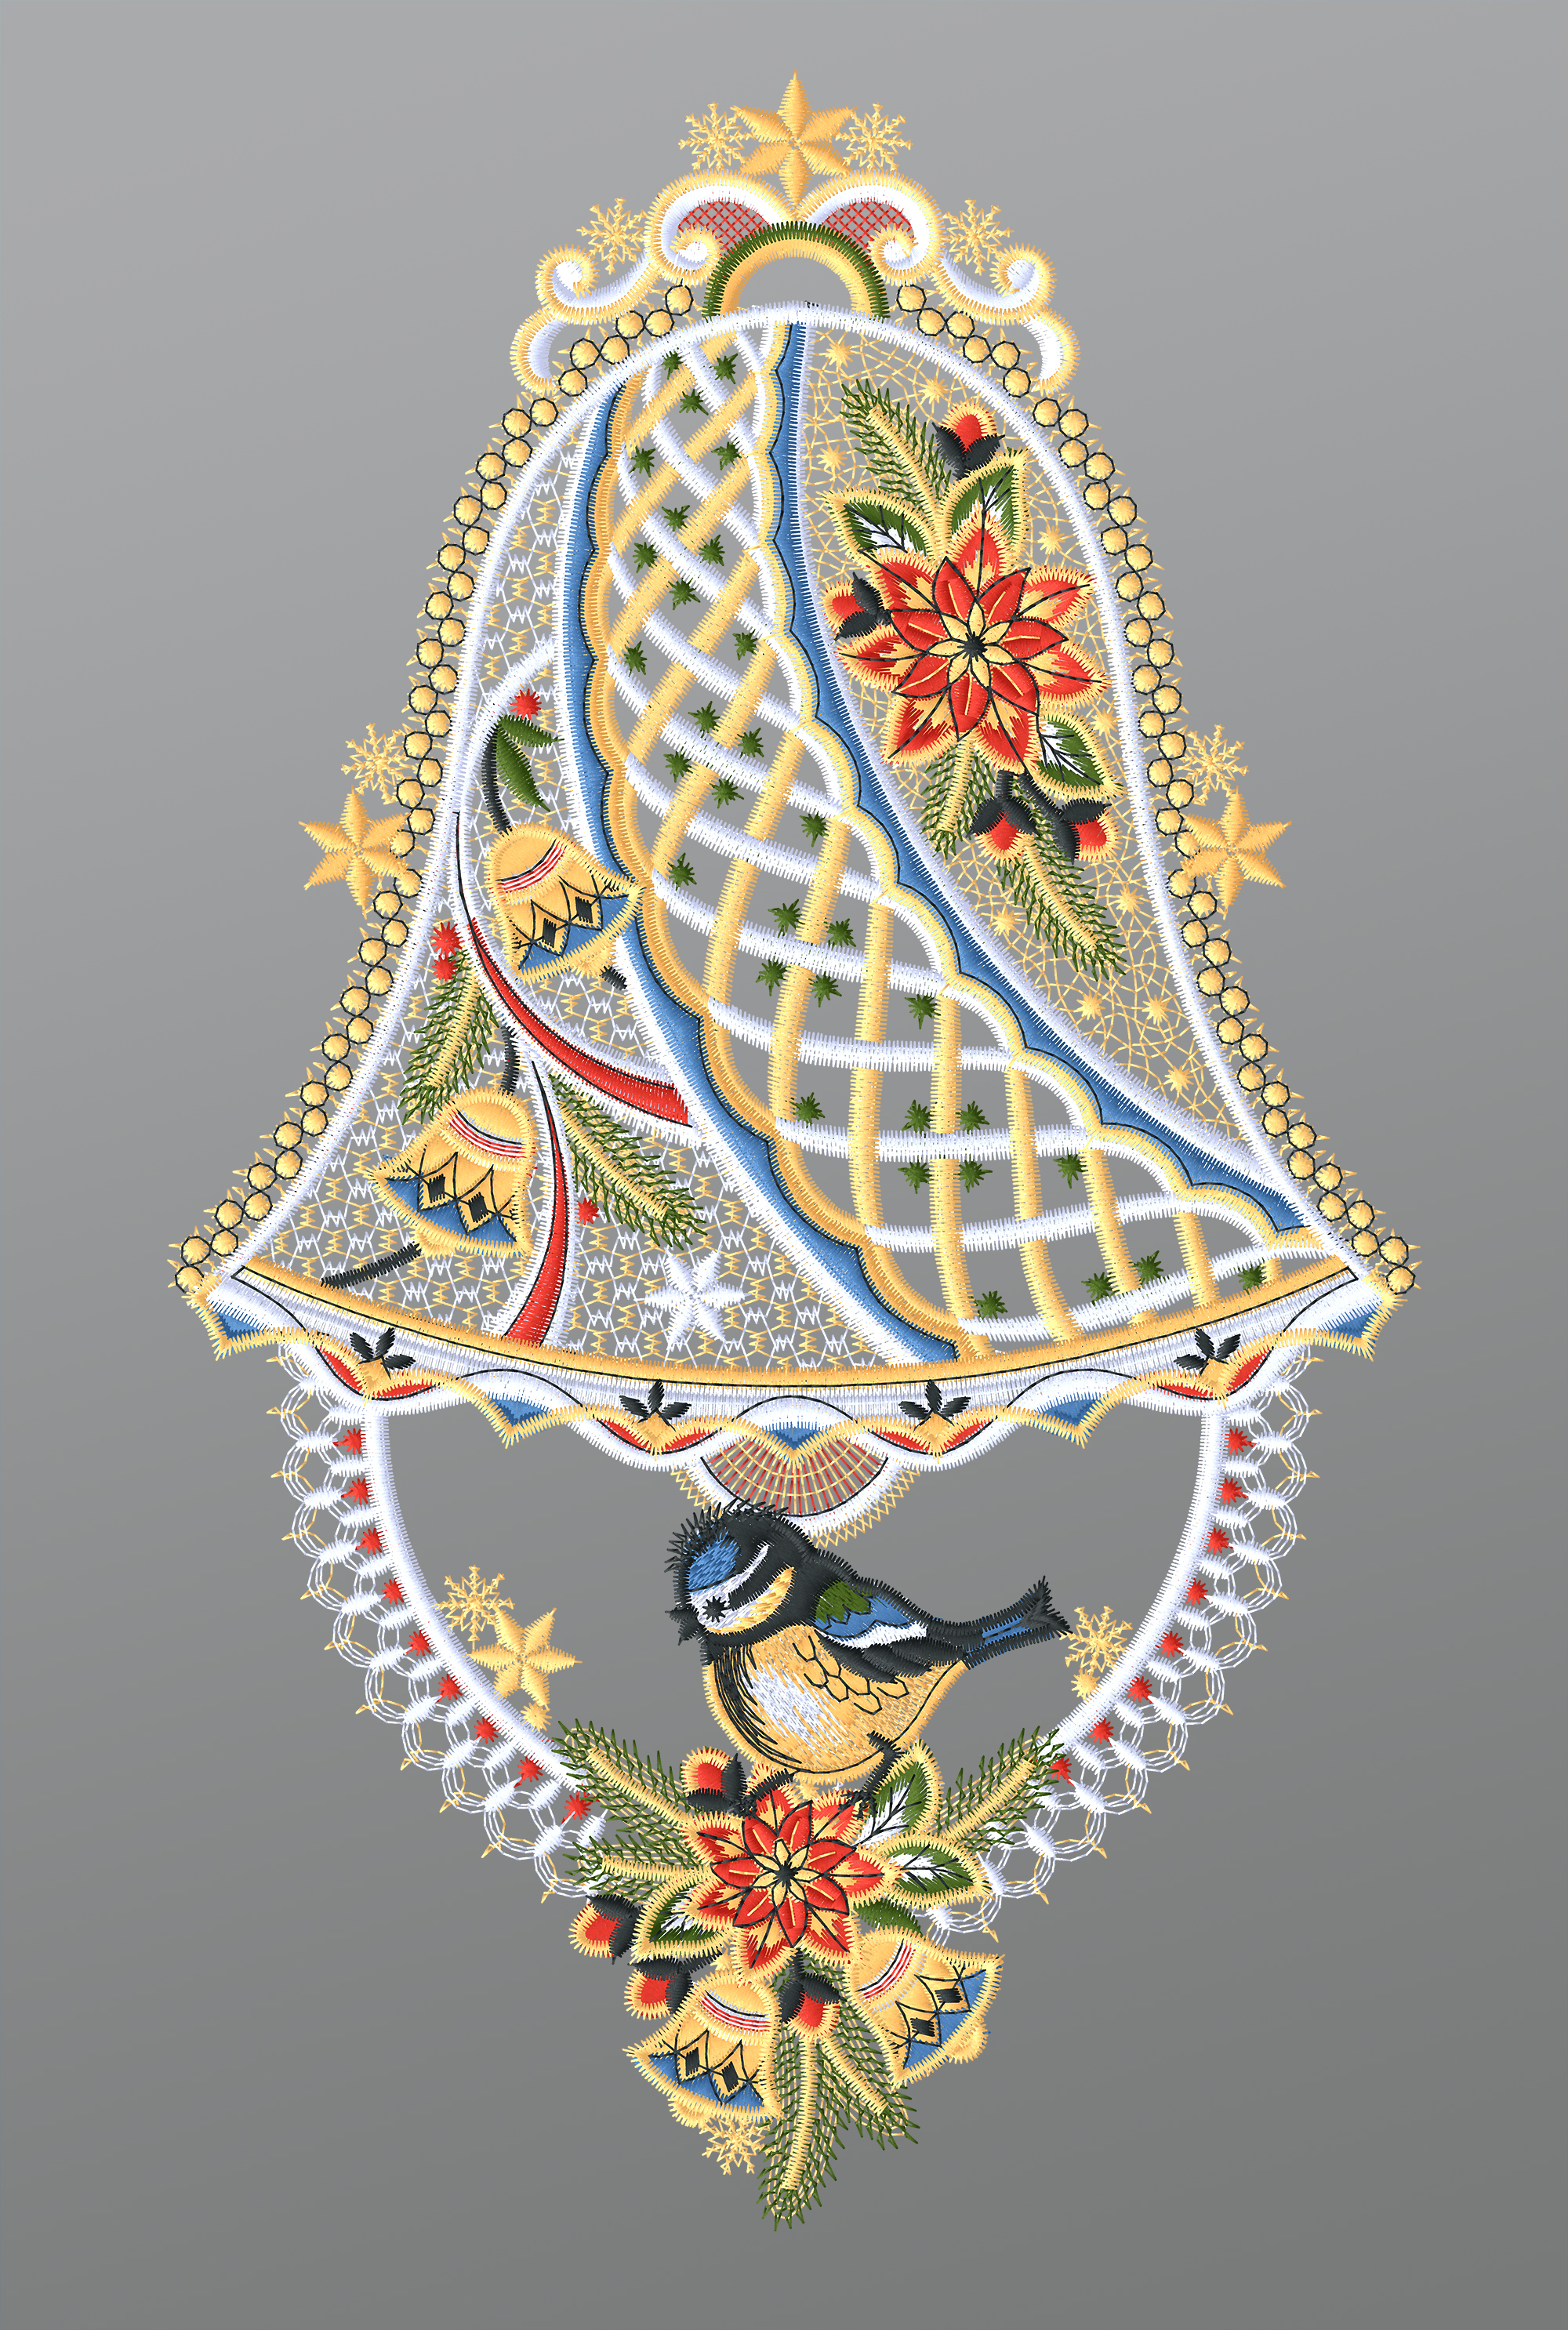 ArtikelbildFensterbild aus Plauener Spitze - Glocke mit Blaumeise #1W mehrfarbig